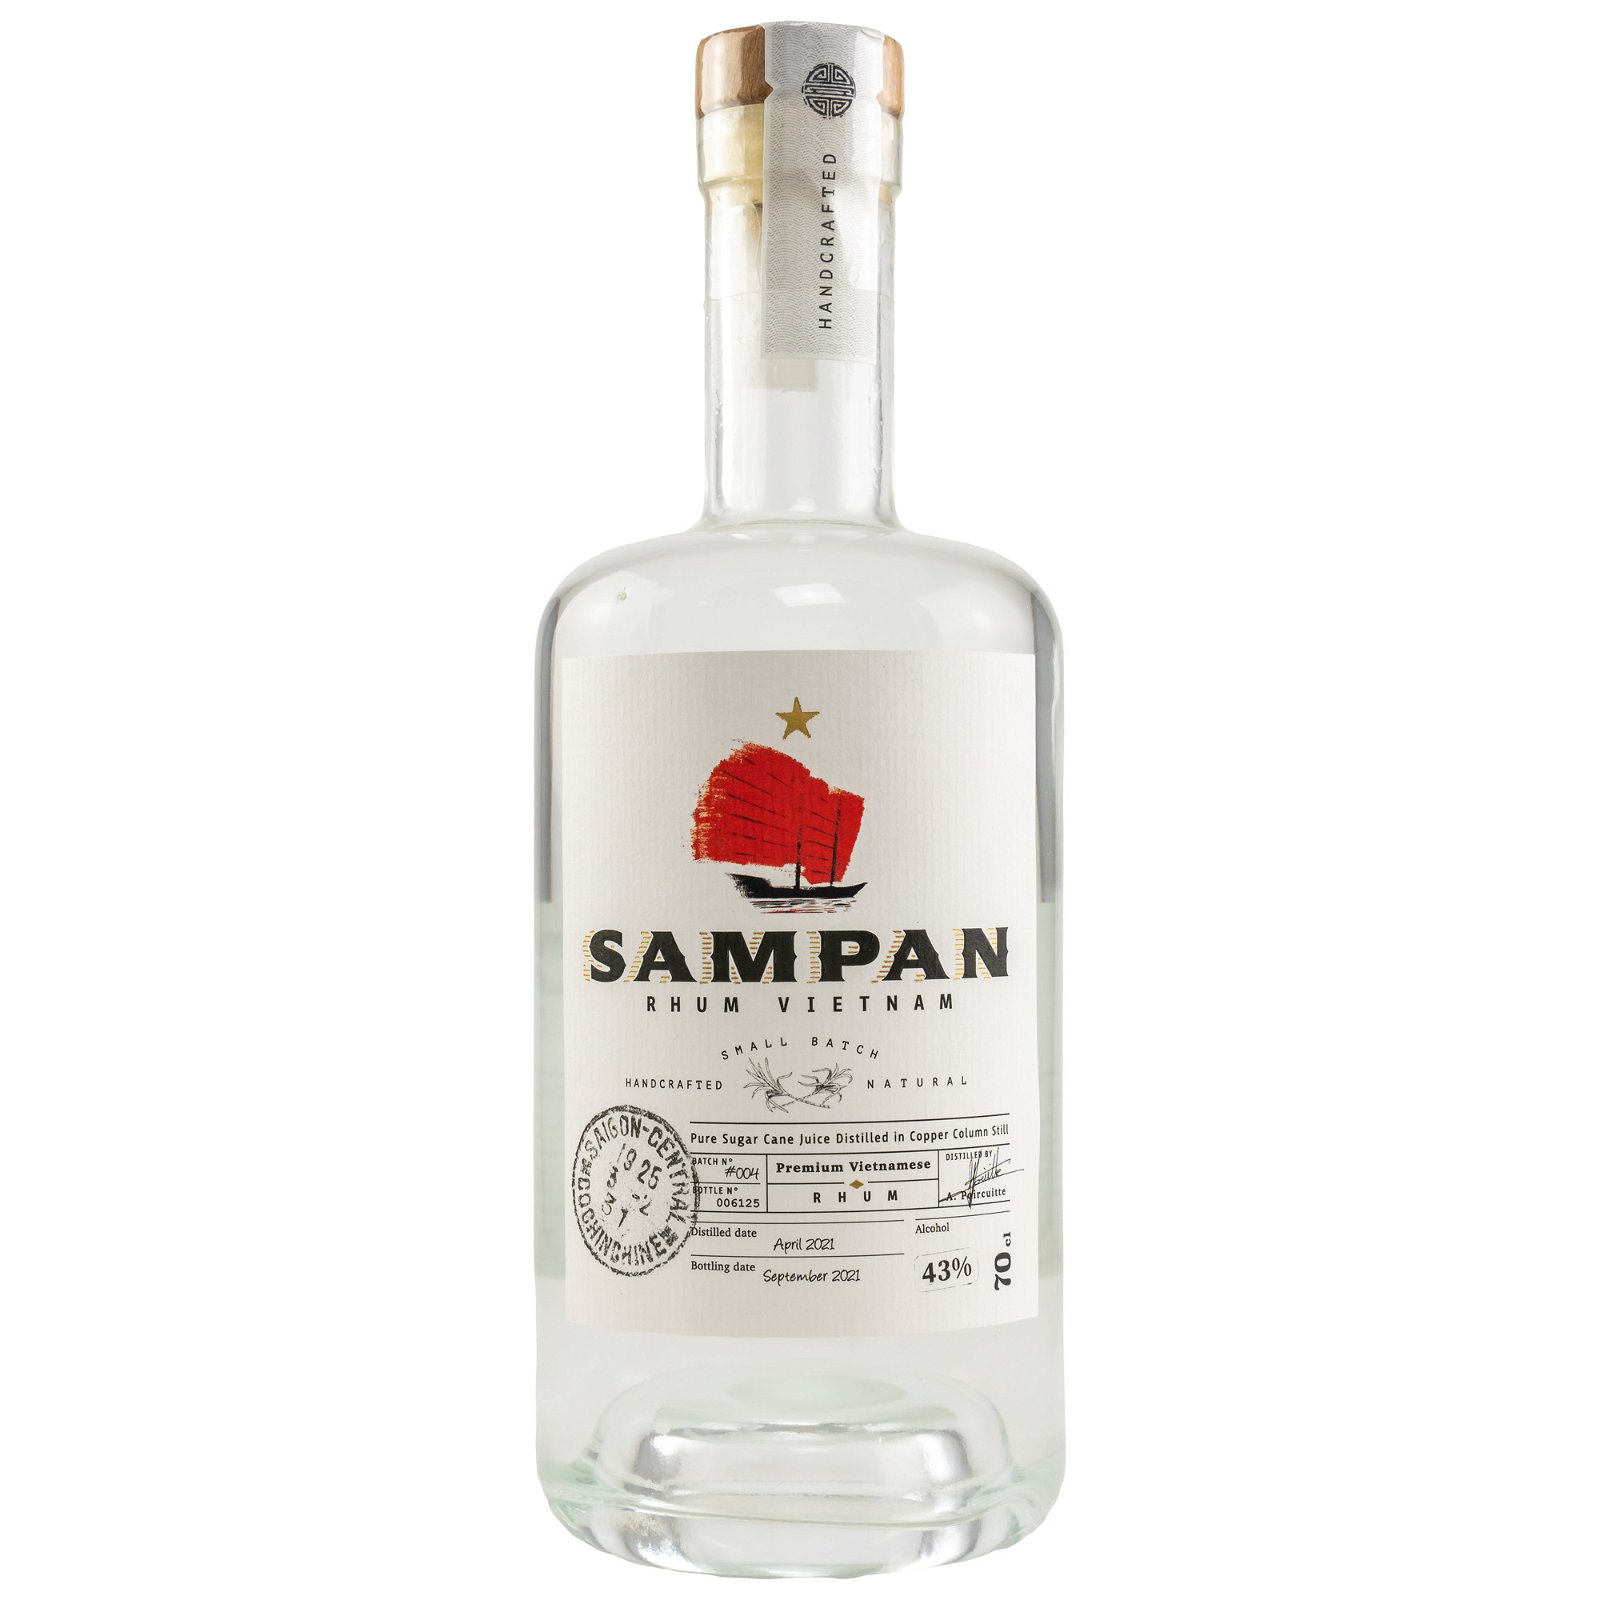 SAMPAN Classic White Rhum 43% (Vietnam)  